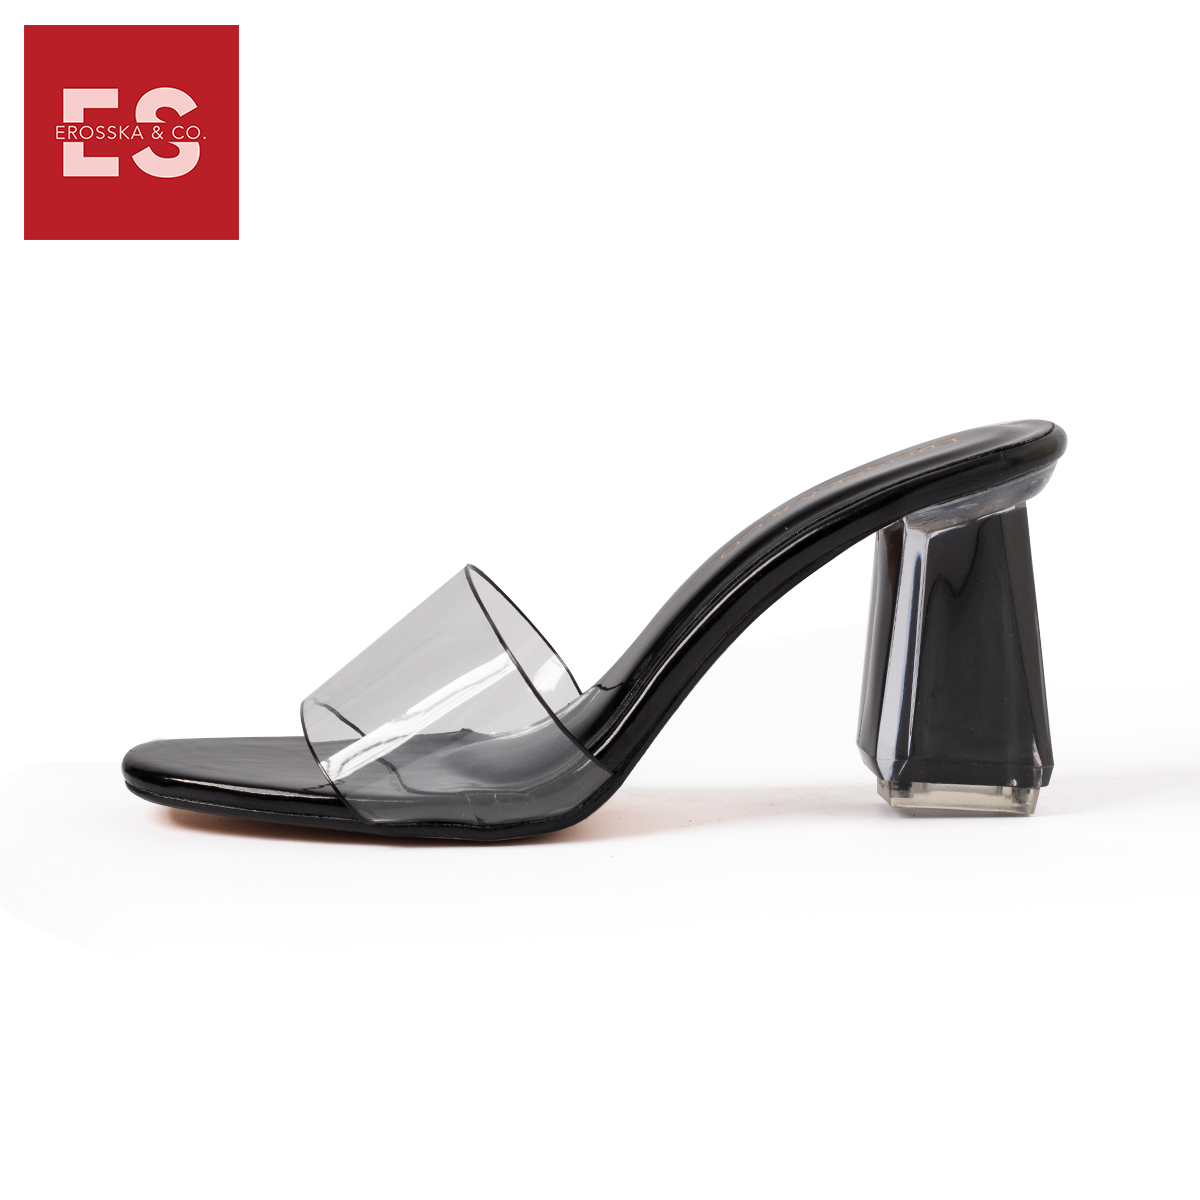 Dép cao gót Erosska quai trong kiểu dáng đơn giản thời trang thanh lịch cao 9cm màu nude - EM040